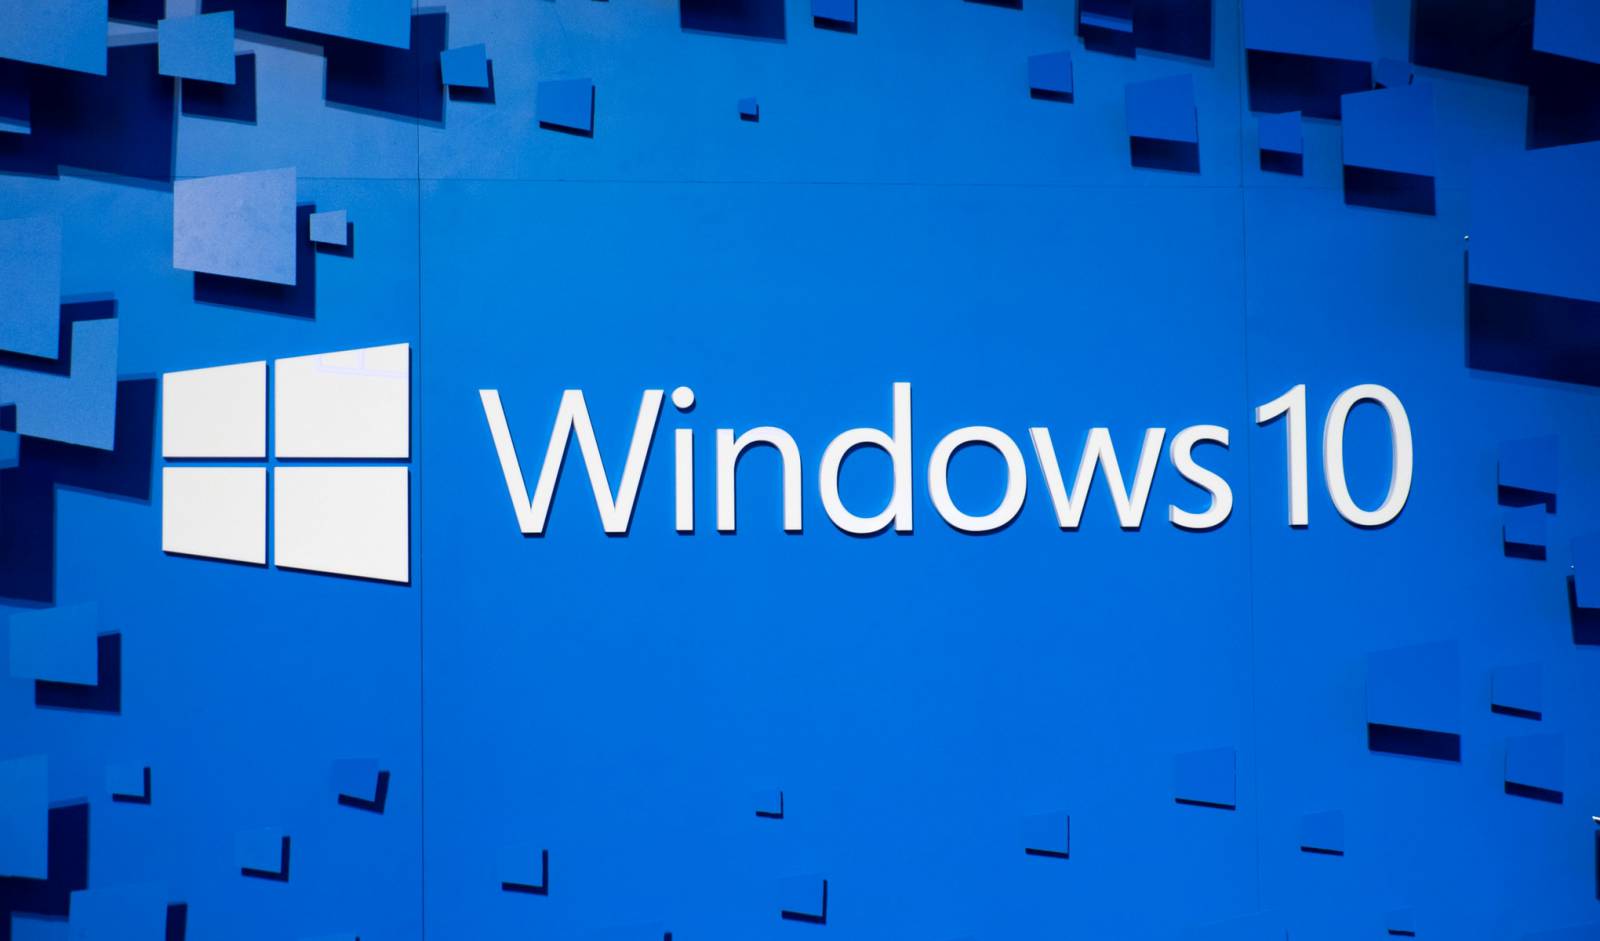 VERRASSING in Windows 10 met een verandering die gebruikers verbaasde